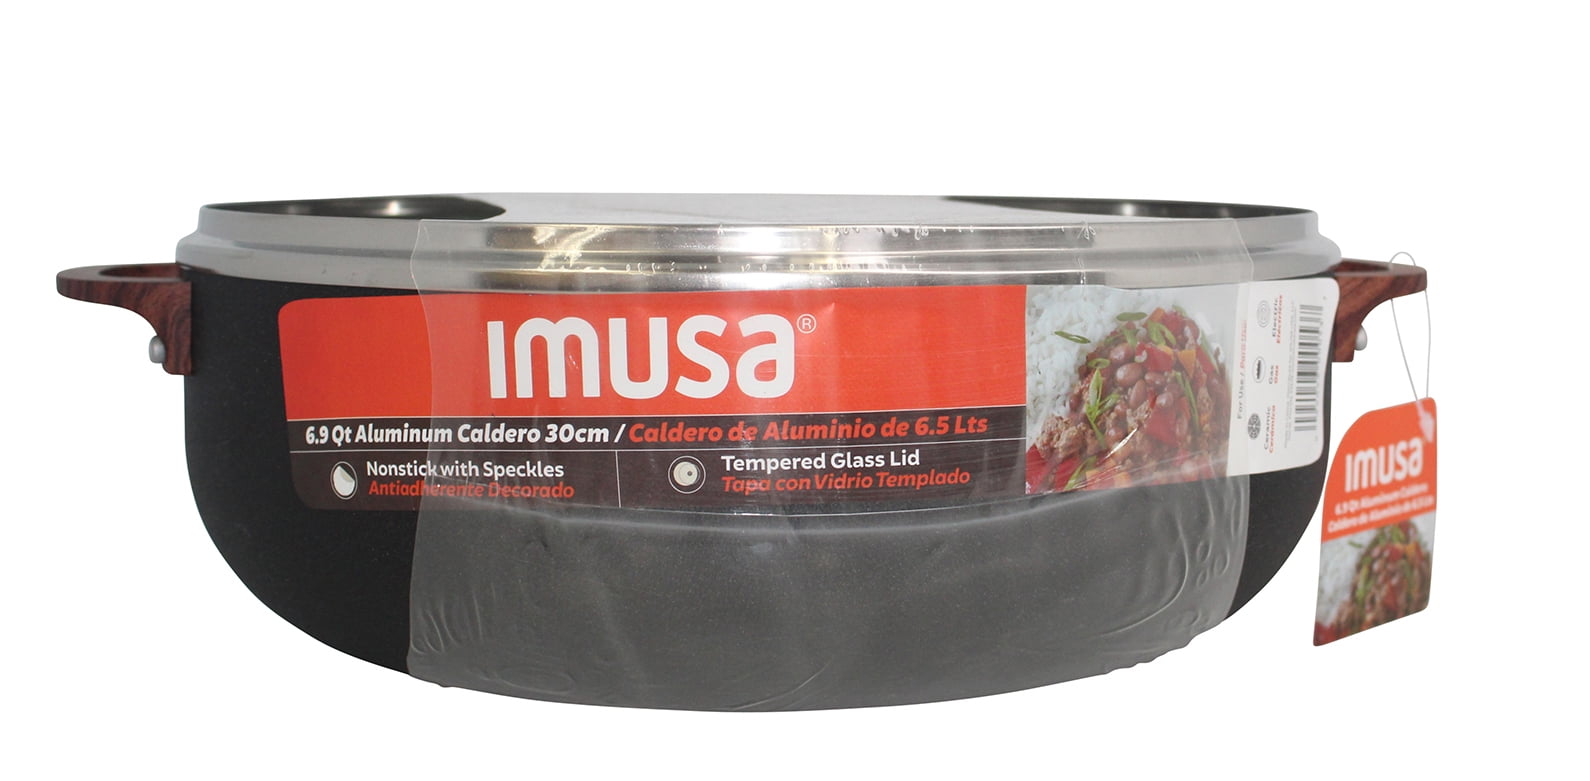 IMUSA 6.9-Quart Ceramic Nonstick Caldero with Glass Lid - Red